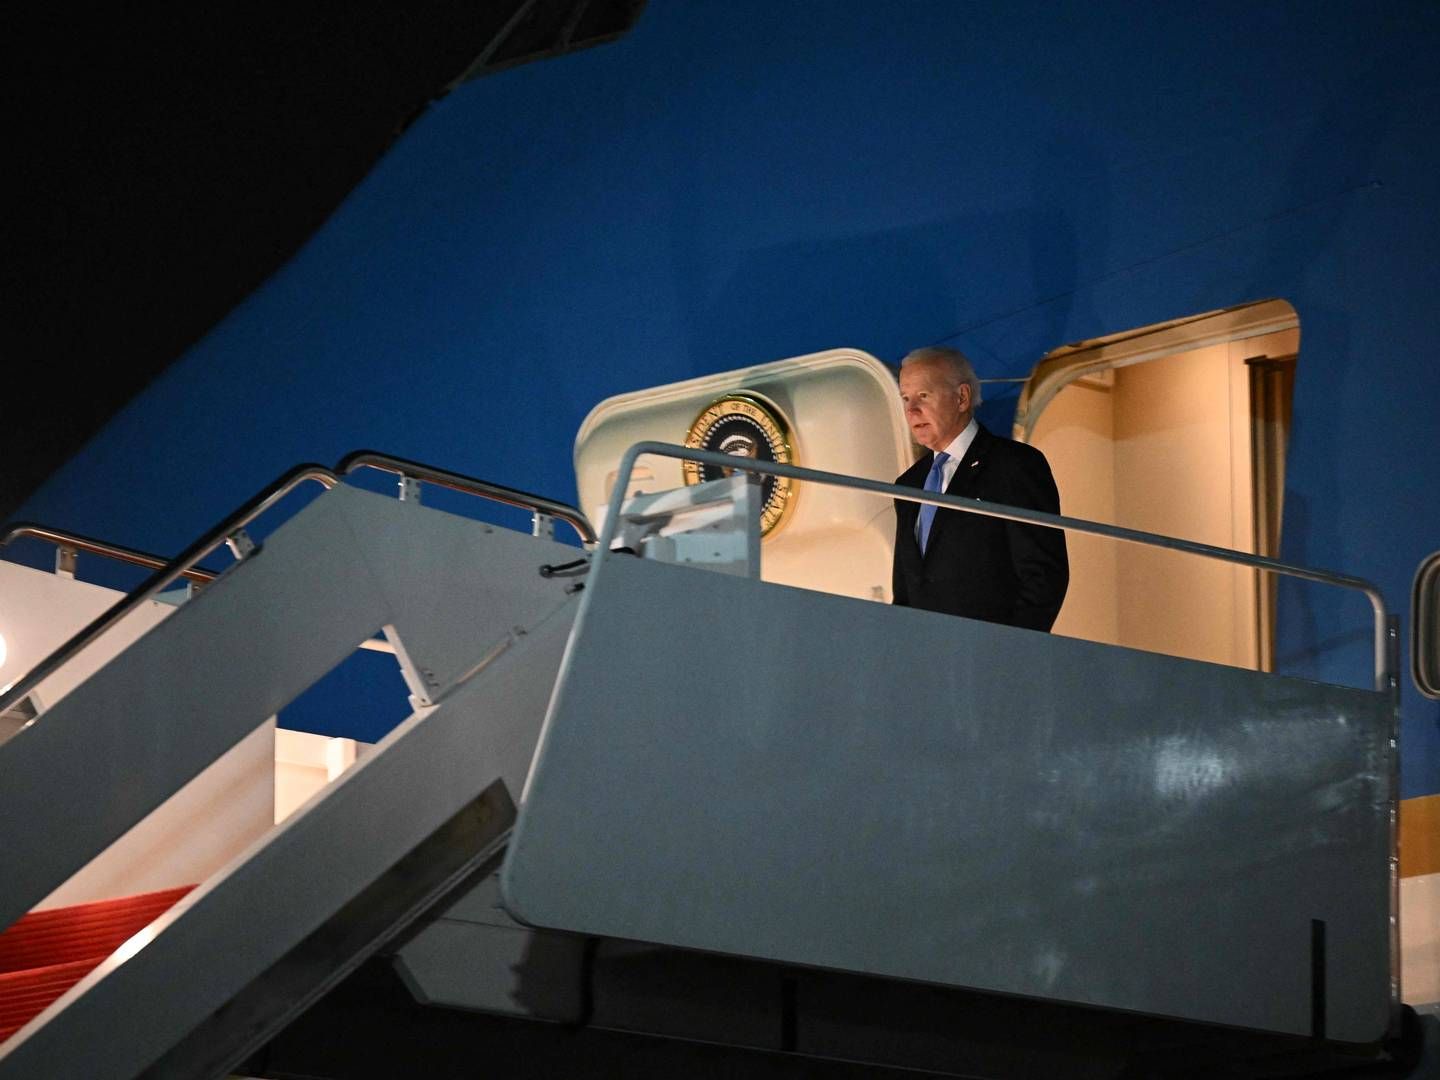 USA's præsident Joe Biden | Foto: Mandel Ngan / AFP / Ritzau Scanpix